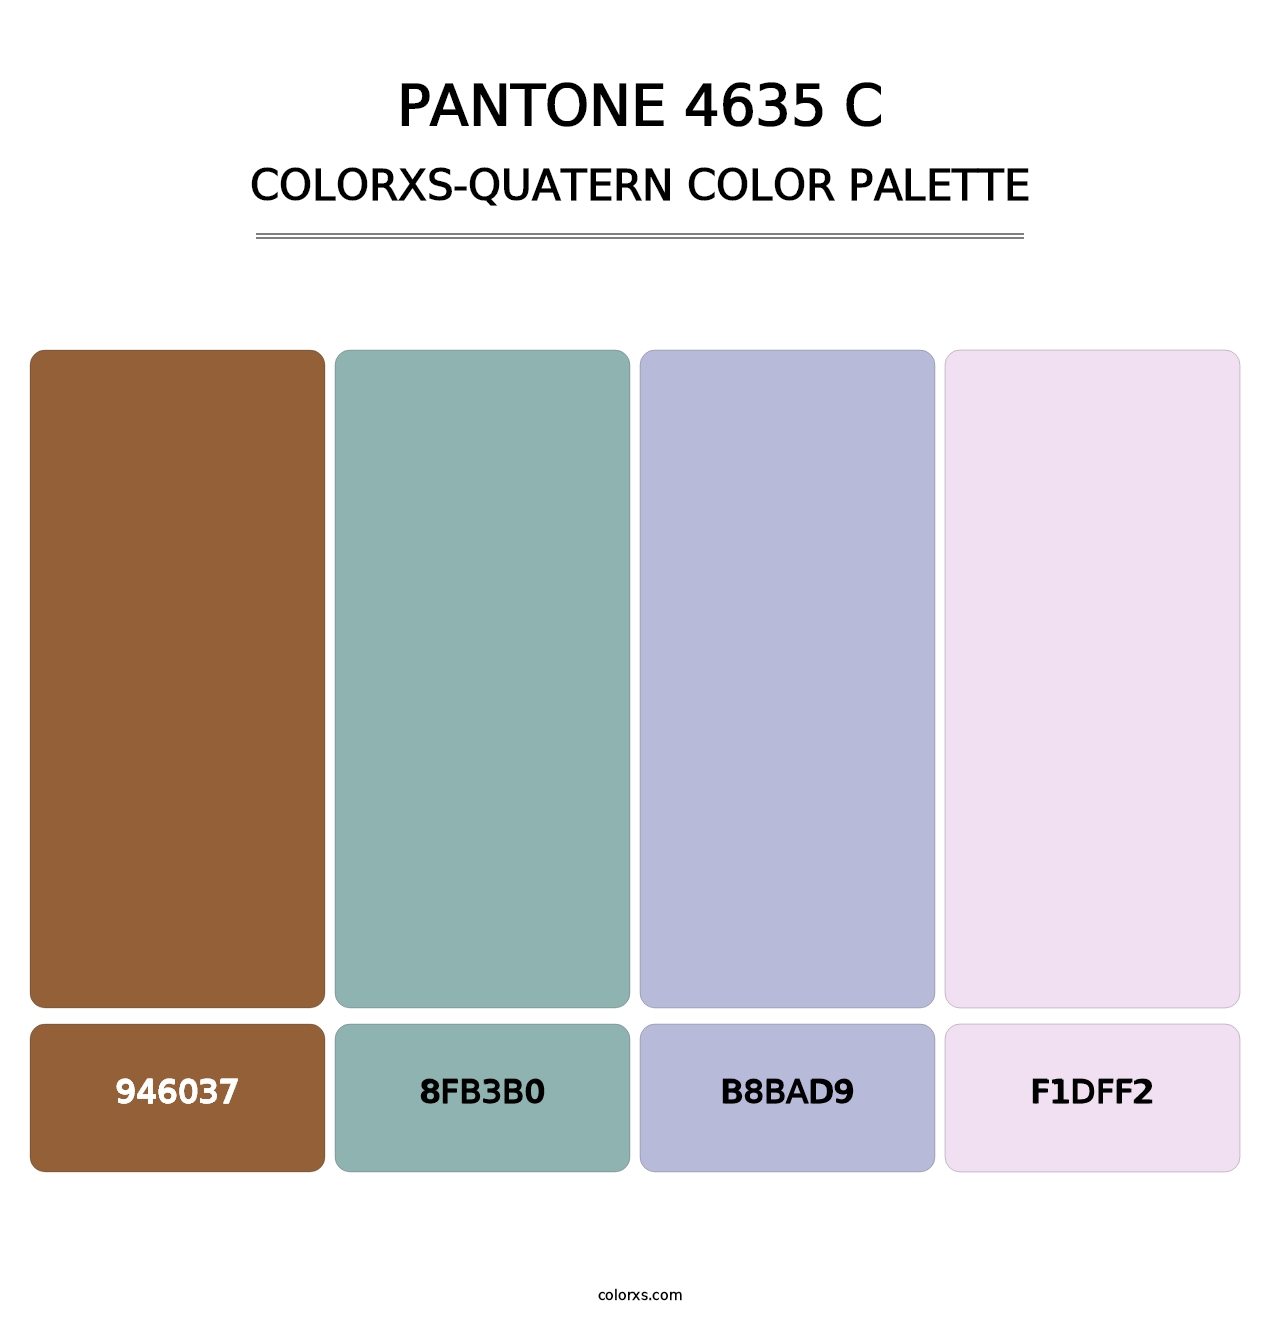 PANTONE 4635 C - Colorxs Quatern Palette